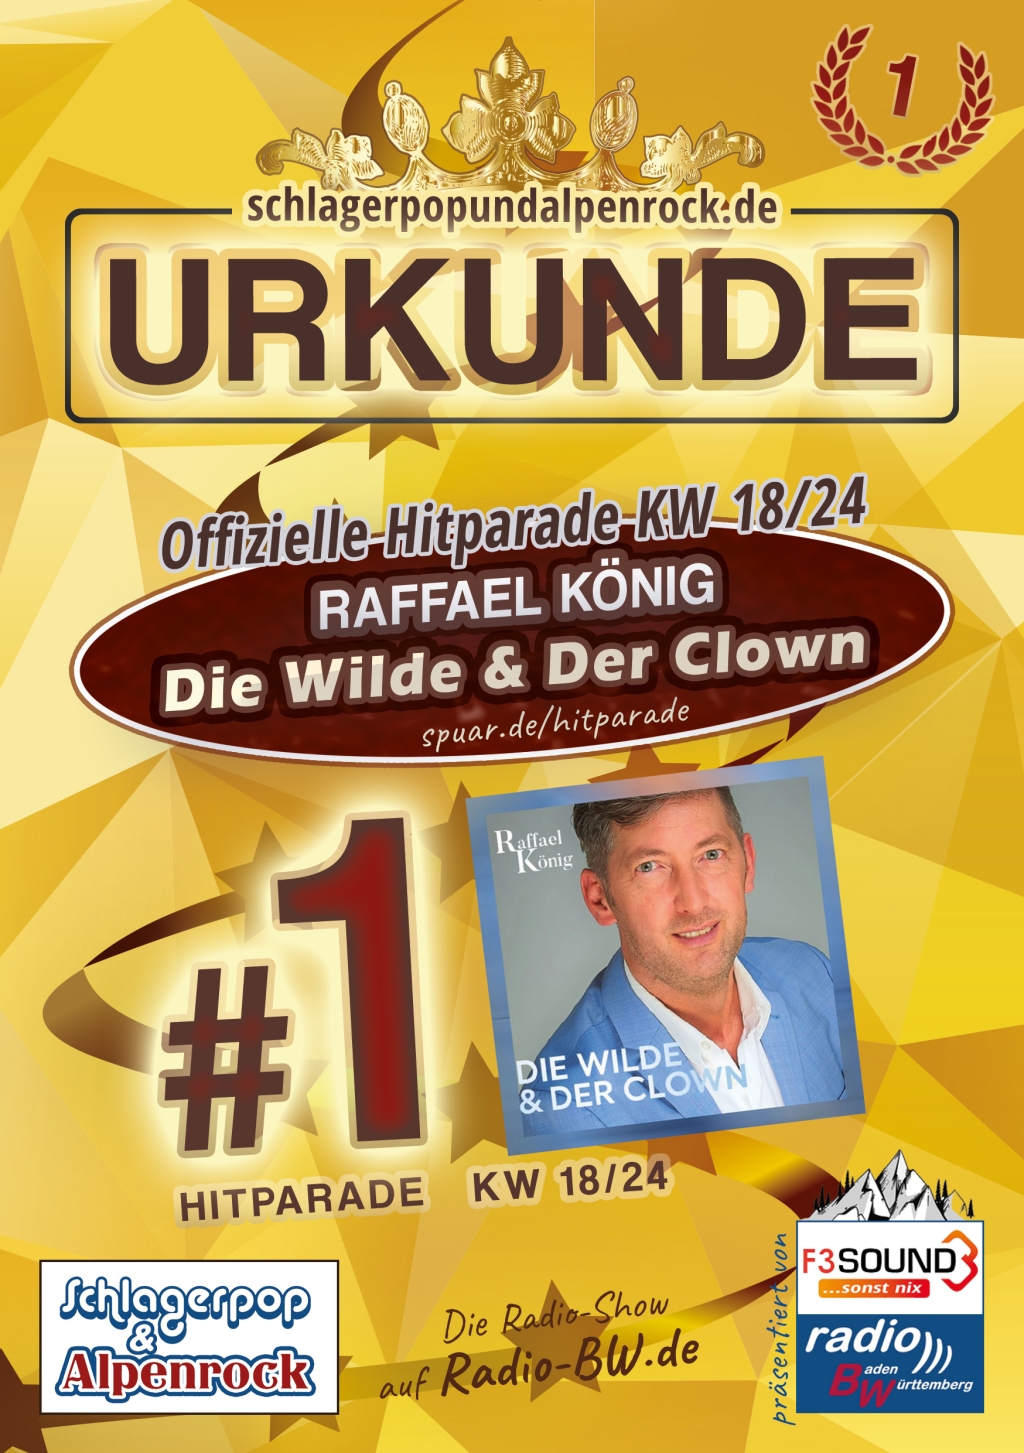 URKUNDE - Offizielle Hitparade KW 18/24